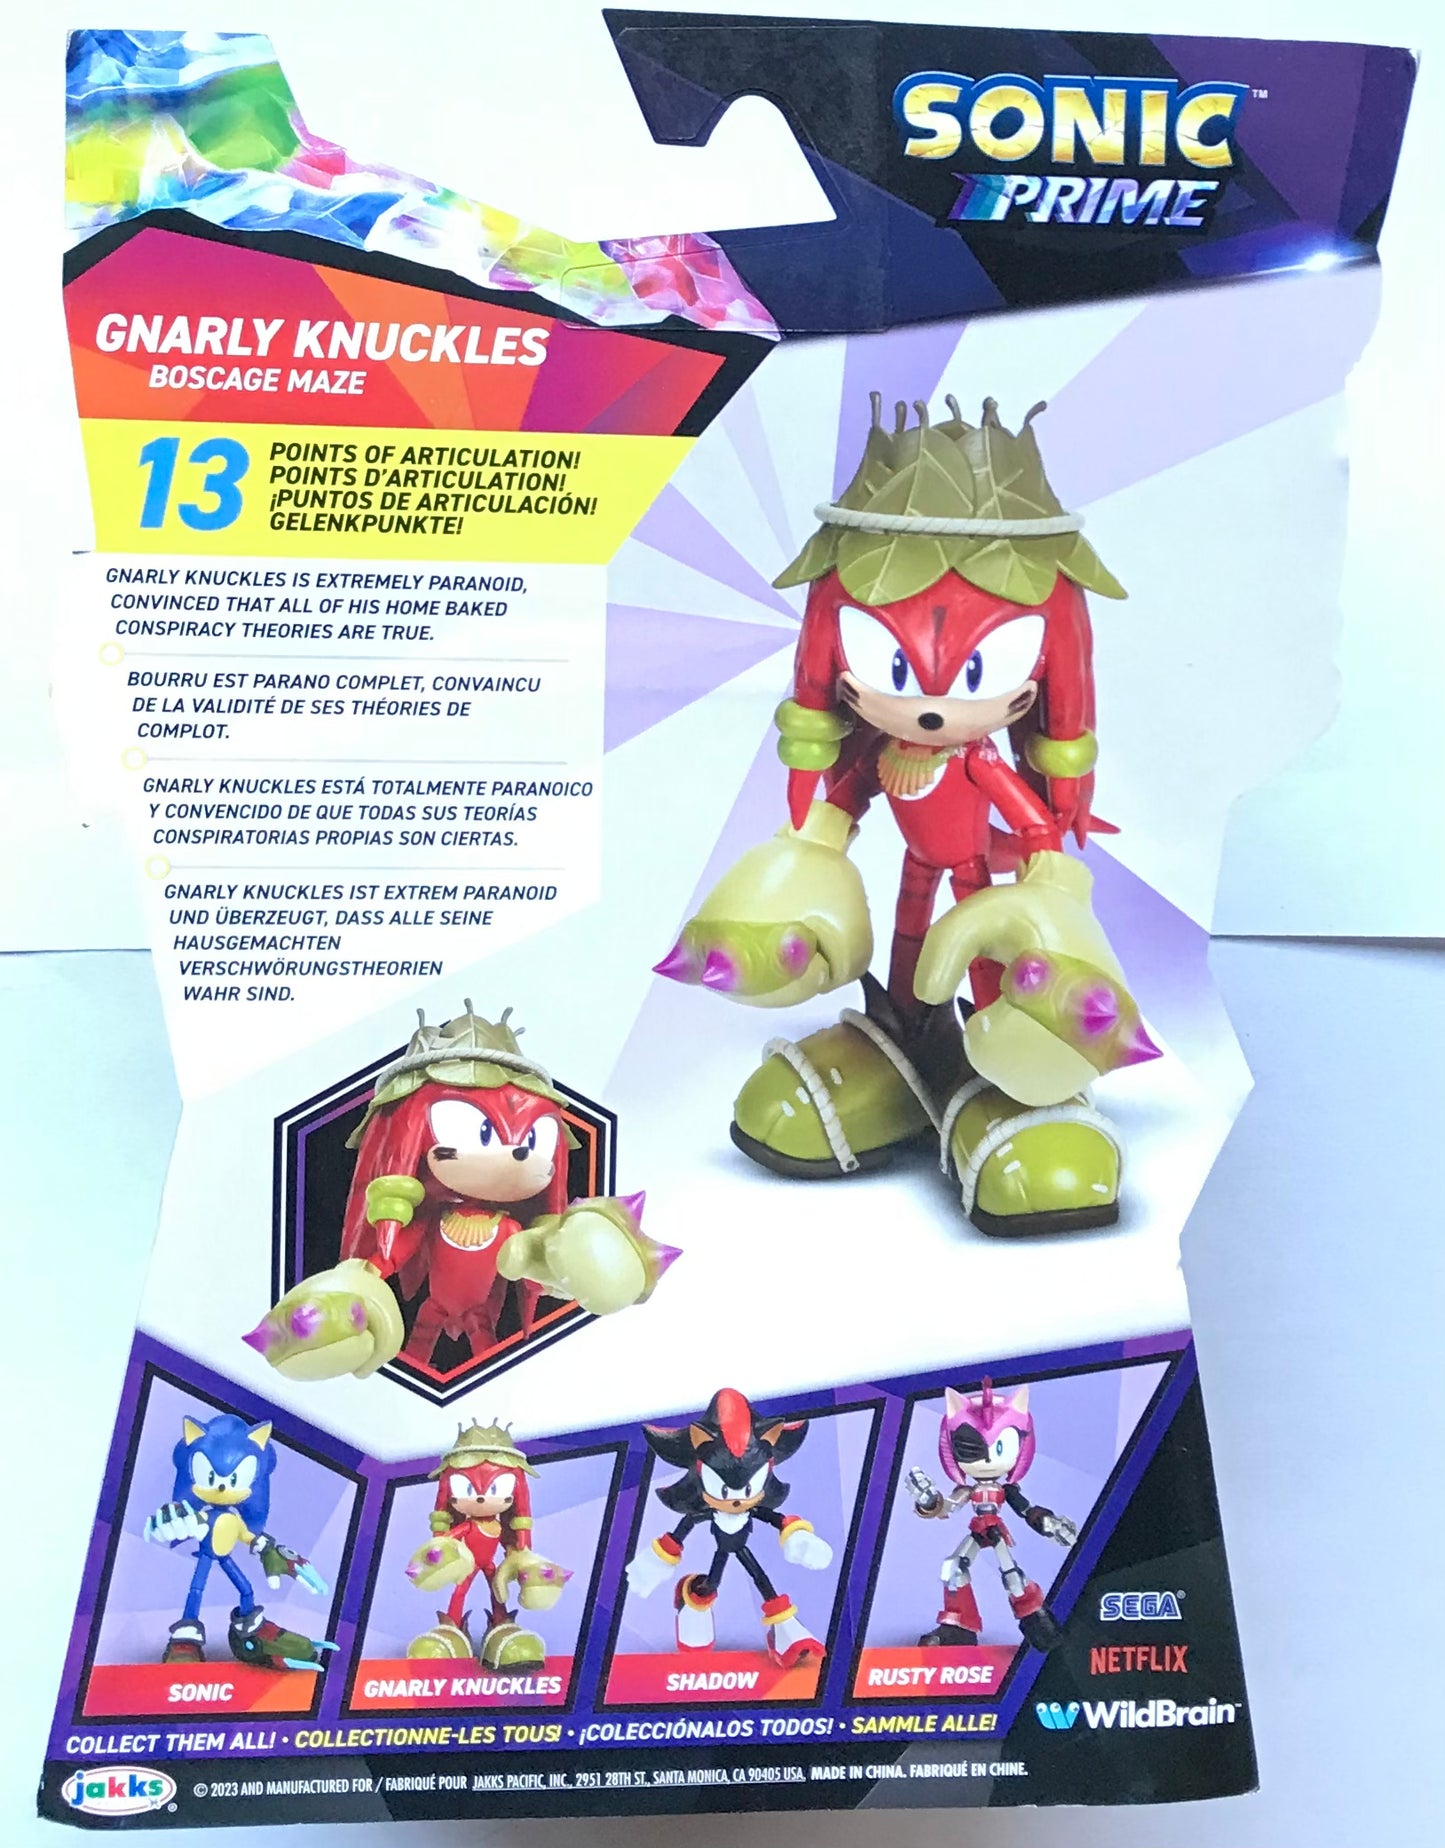 Jakks Netflix Sonic Prime Gnarly Knuckles Boscage Maze 5” Inch Figure